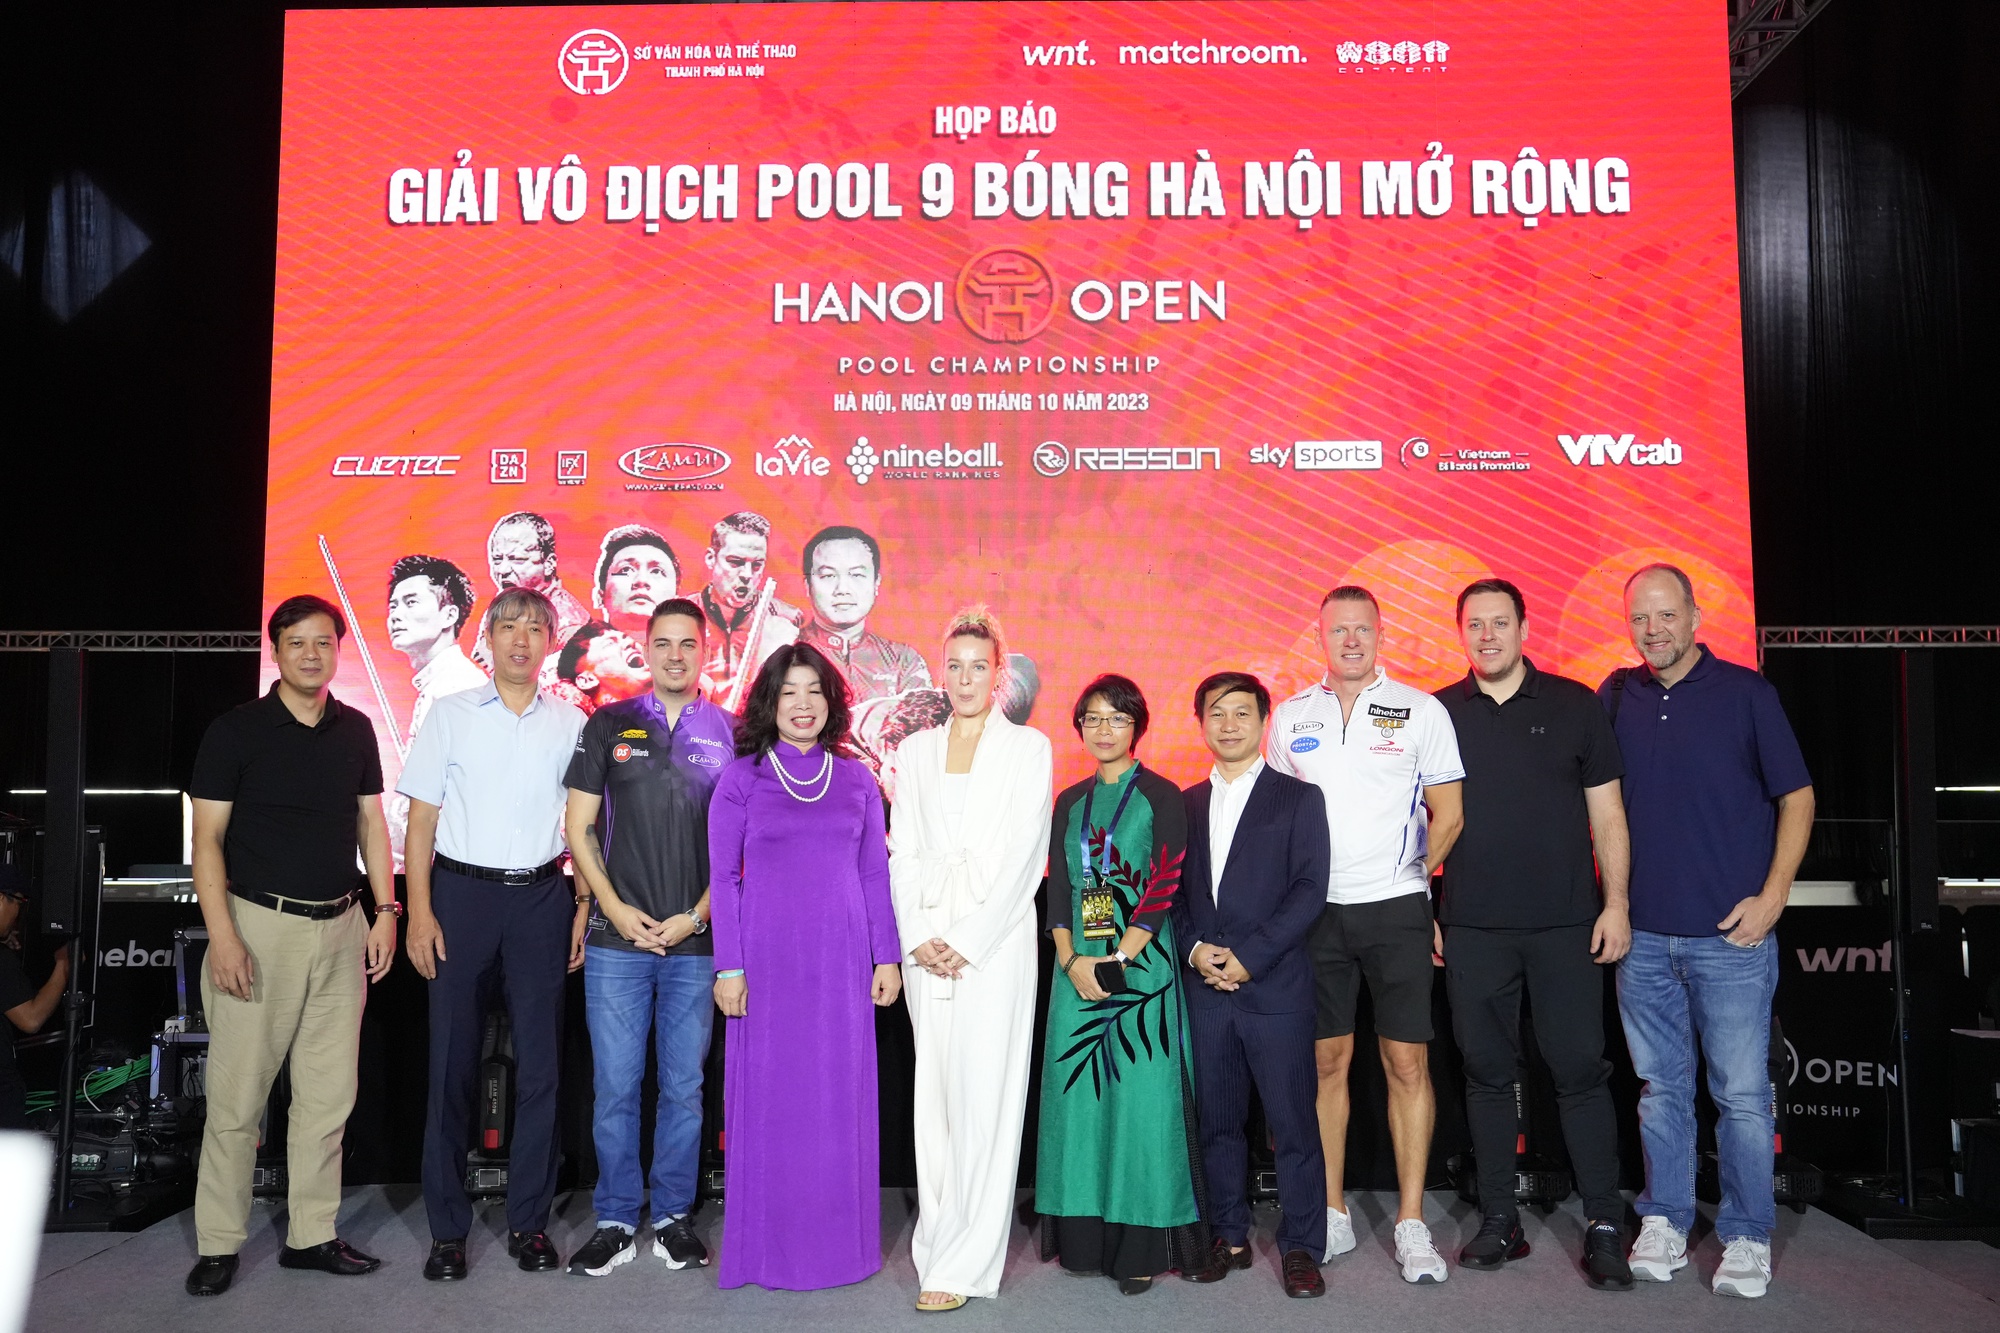 128 cơ thủ hàng đầu thế giới hội tụ ở giải Hanoi Open Pool Championship - Ảnh 1.